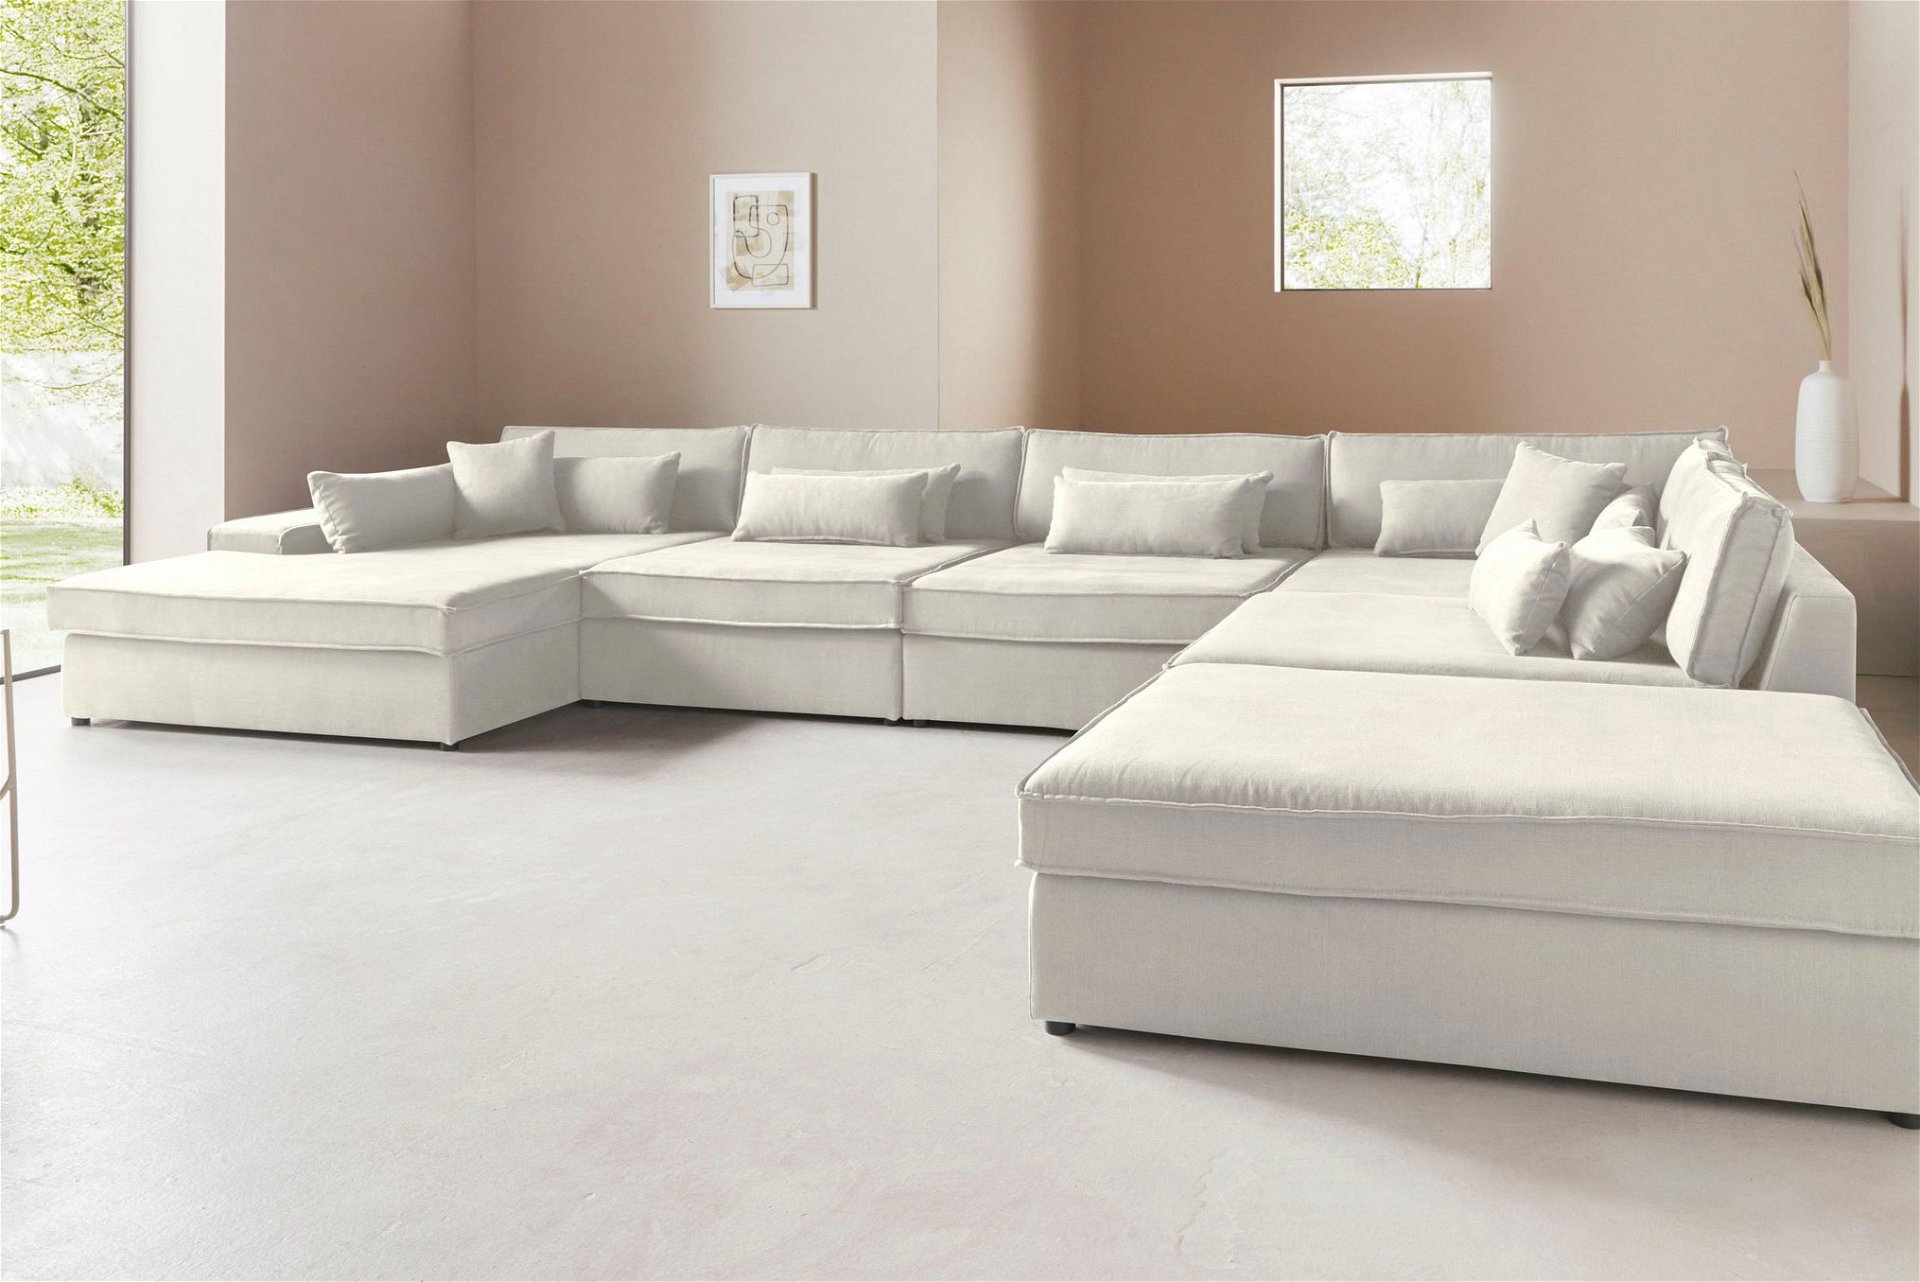 Ein Blickfang für dein Wohnzimmer ist die gemütliche Wohnlandschaft »Joreen« und begeistert mit einer trendigen Optik. Besonders cool: Das Sofa setzt sich aus unterschiedlichen Modulen zusammen und ist daher variabel stellbar. 